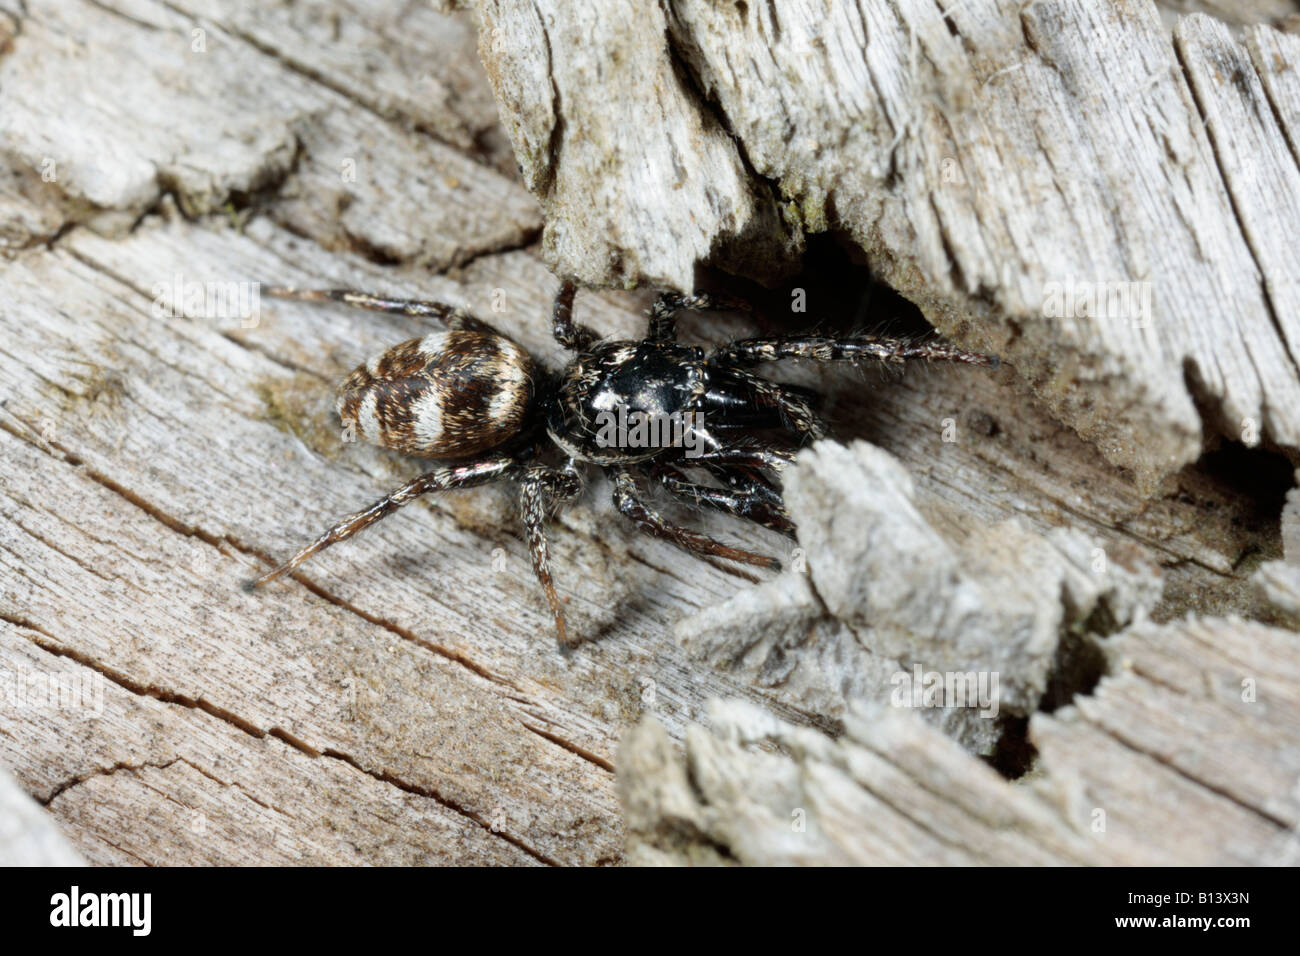 Salticus scenicus araignée sauteuse zebra sur log Potton chasse Bedfordshire Banque D'Images